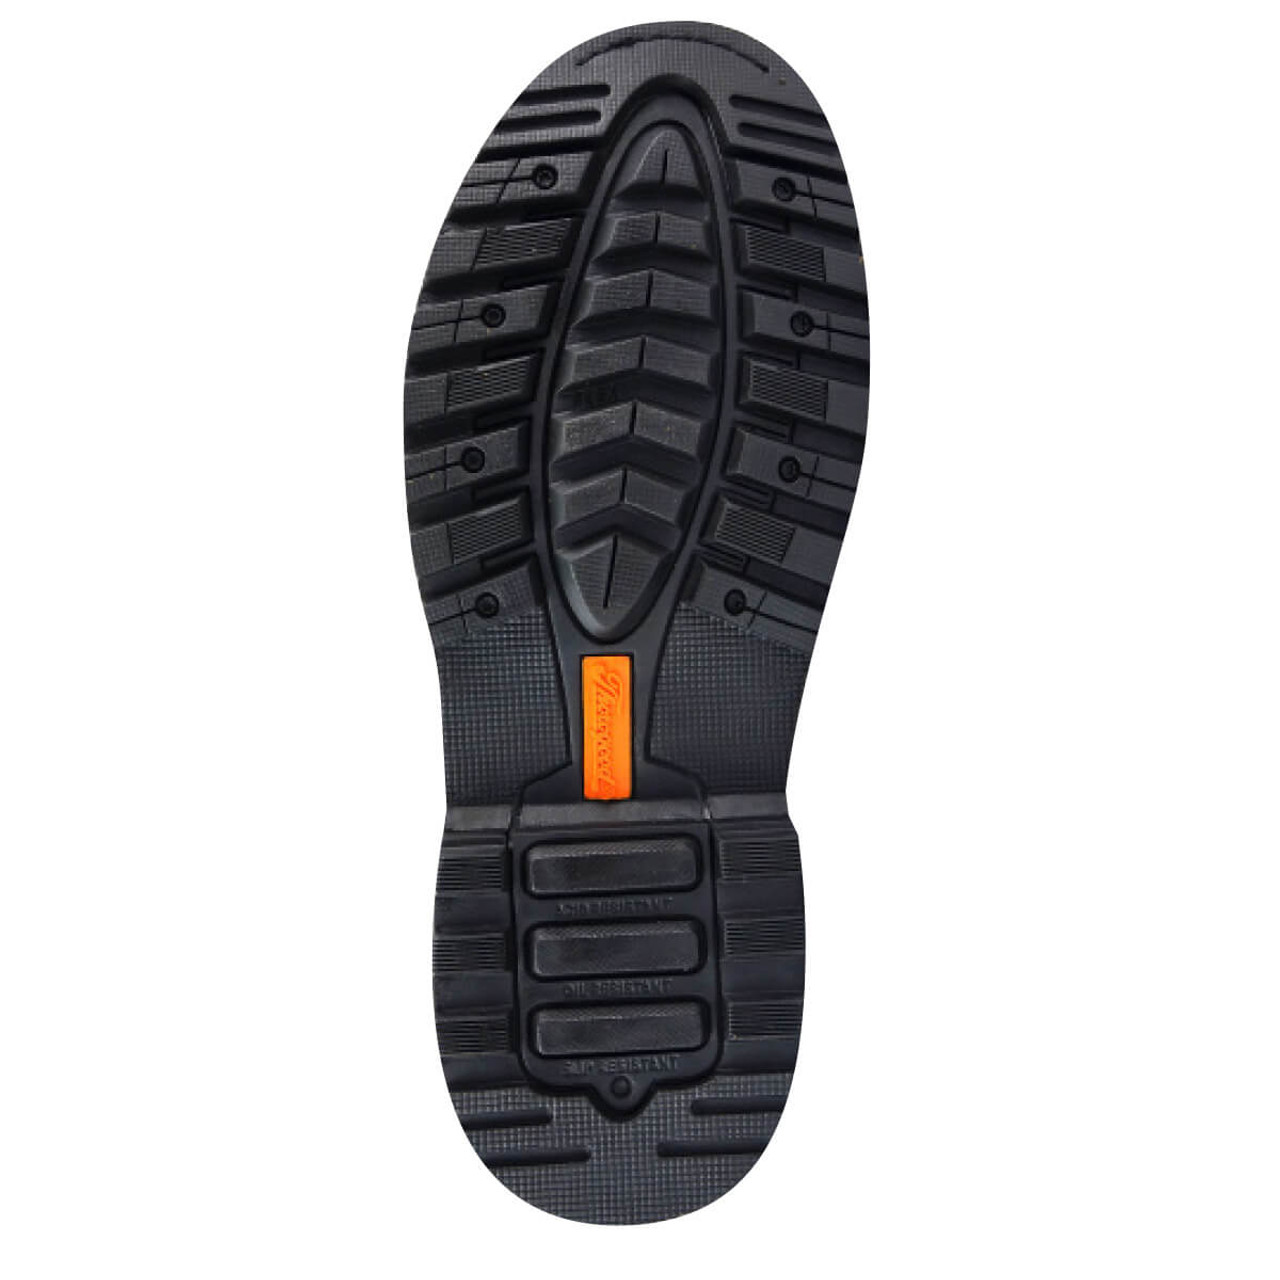 Thorogood 804-3237 V-Series Waterproof  8 Boots,  Crazyhorse Leather Upper, Composite Safety Toe